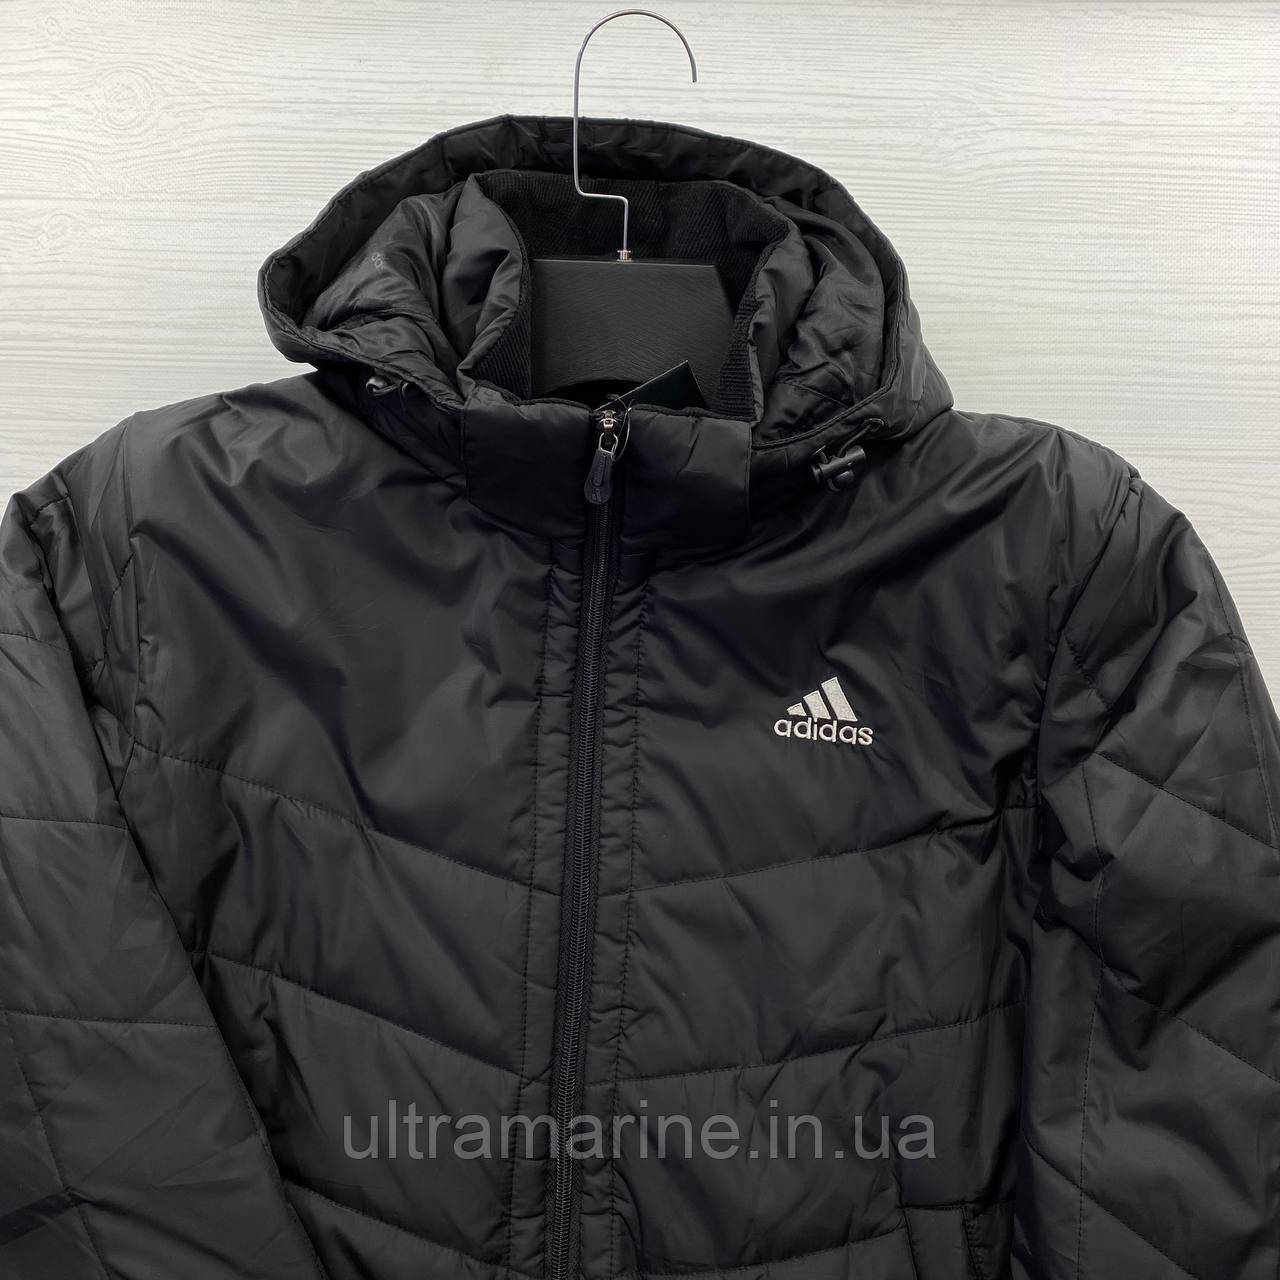 Чоловіча куртка Adidas з капюшоном демісезон осінь/весна чорна (Адідас) М-ХXL